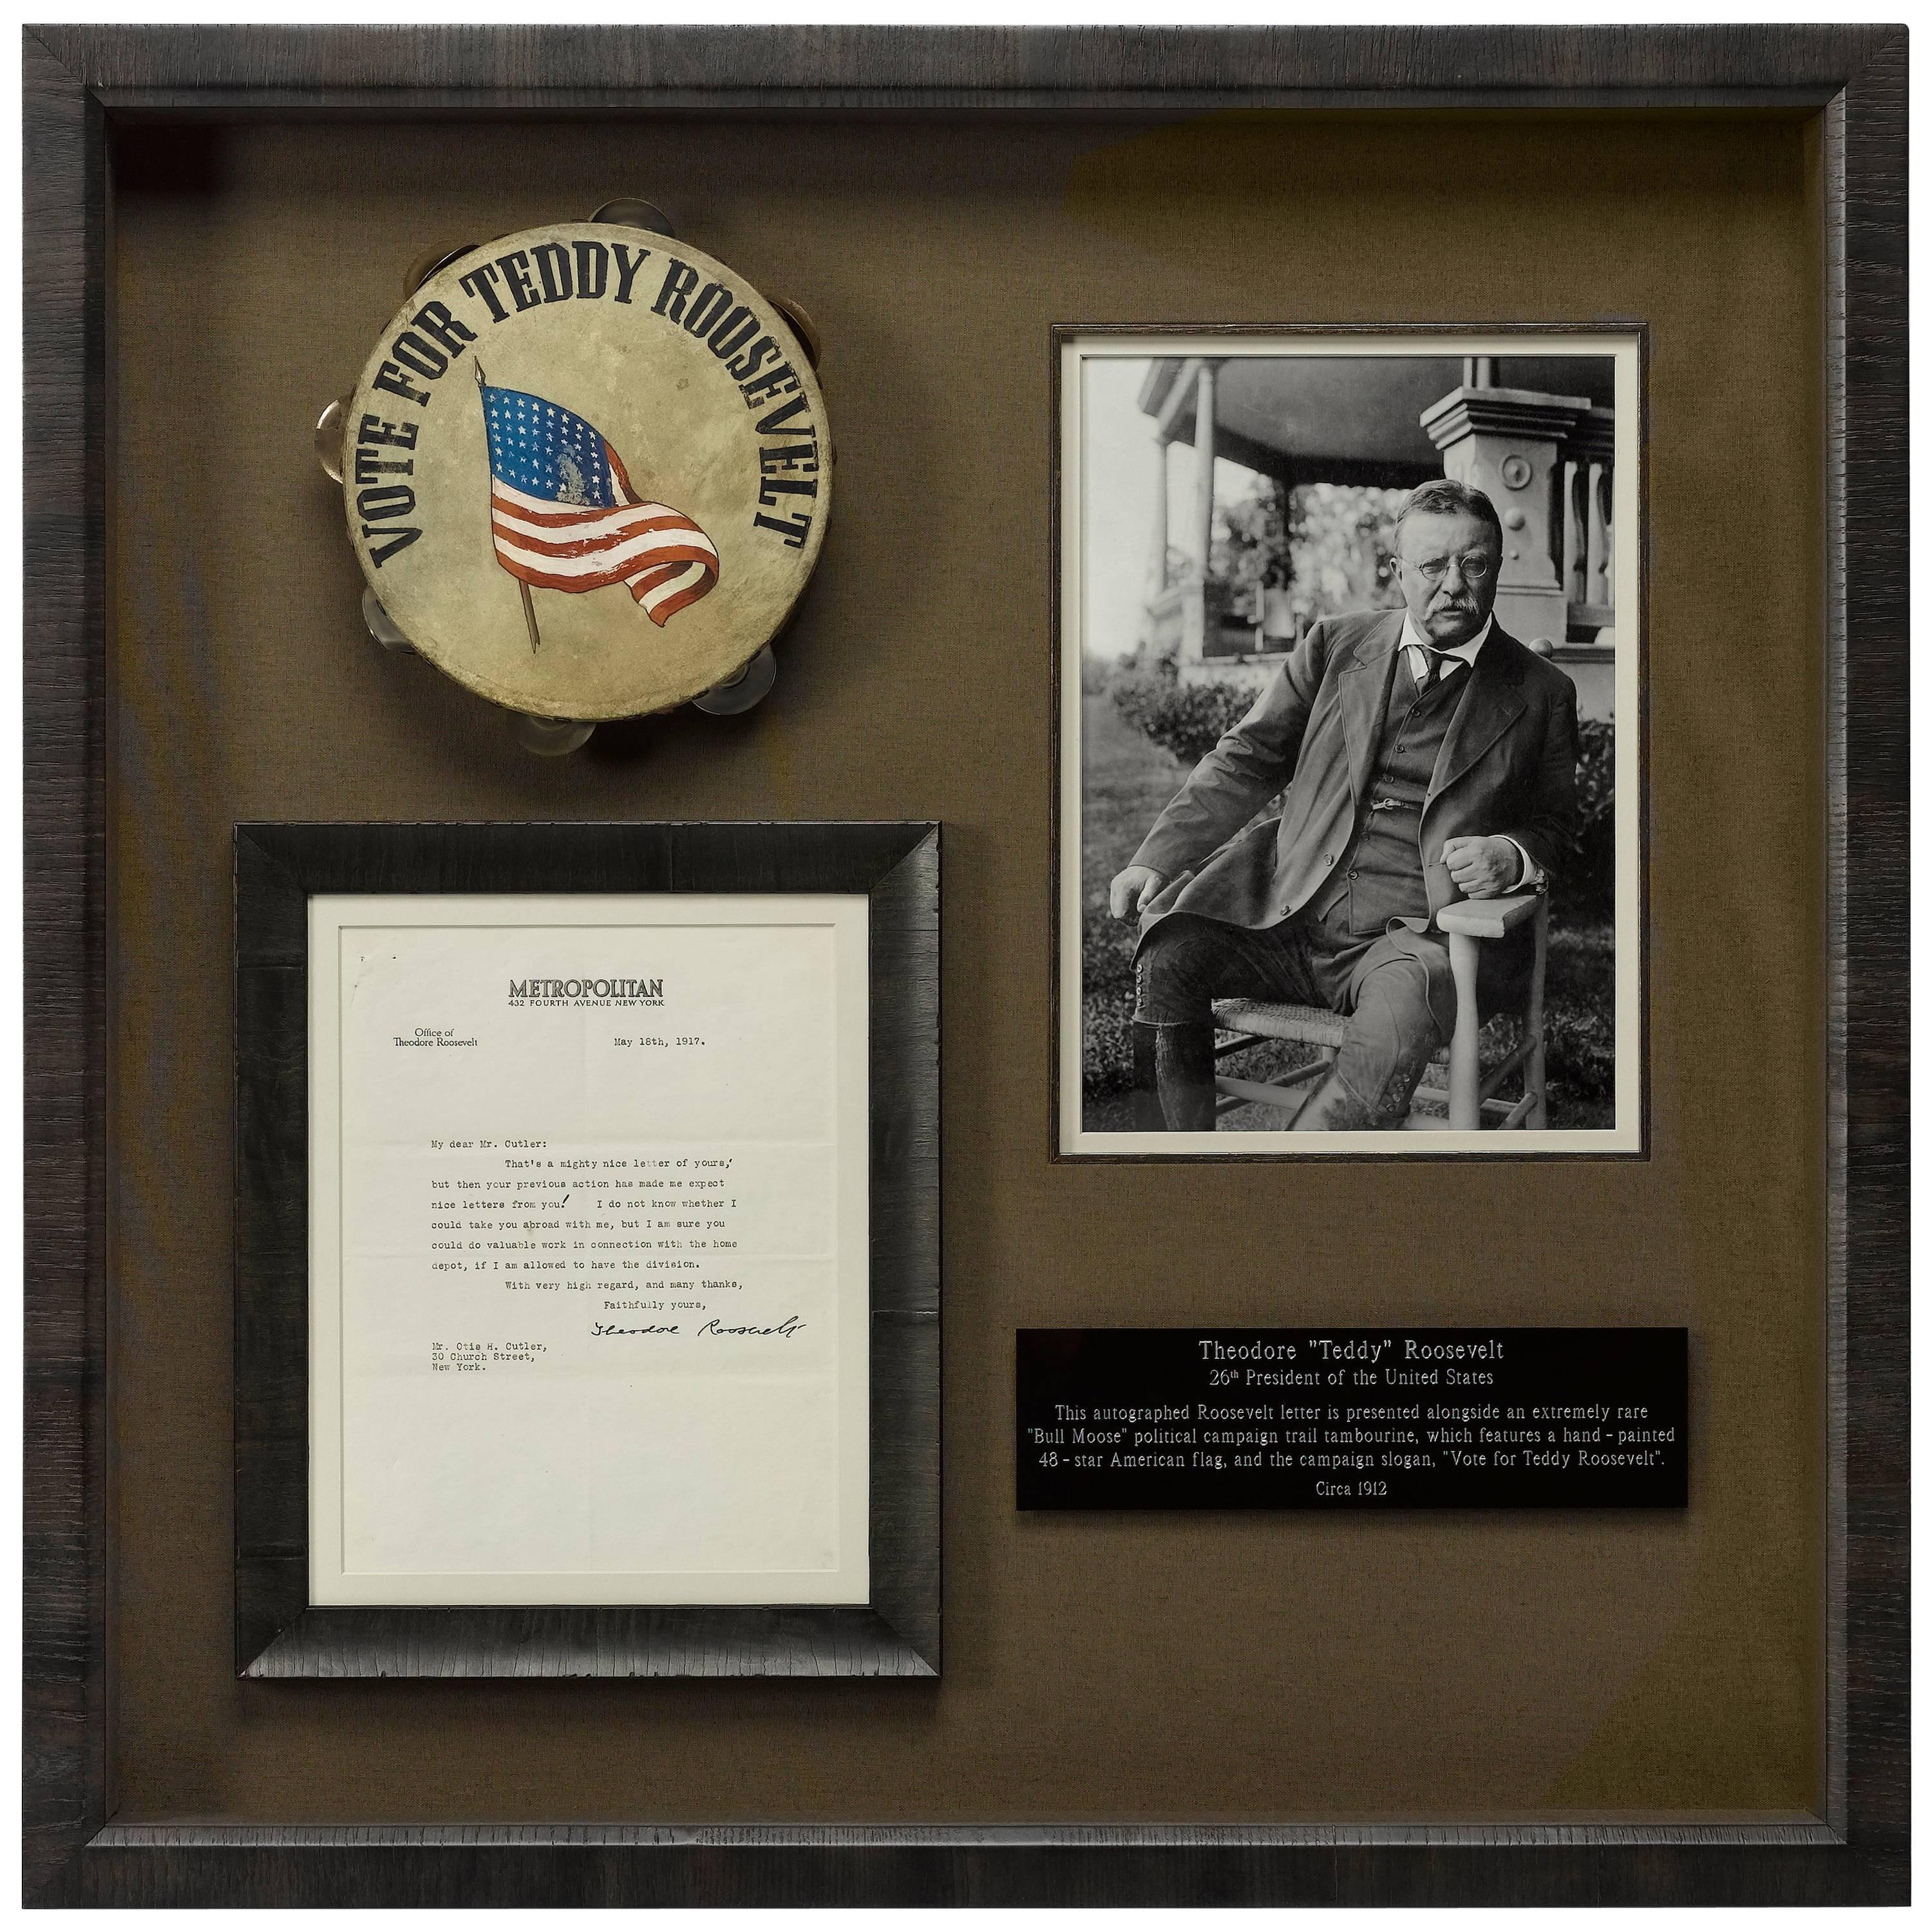 Teddy Roosevelt Multi-Media Collage of Memorabilia